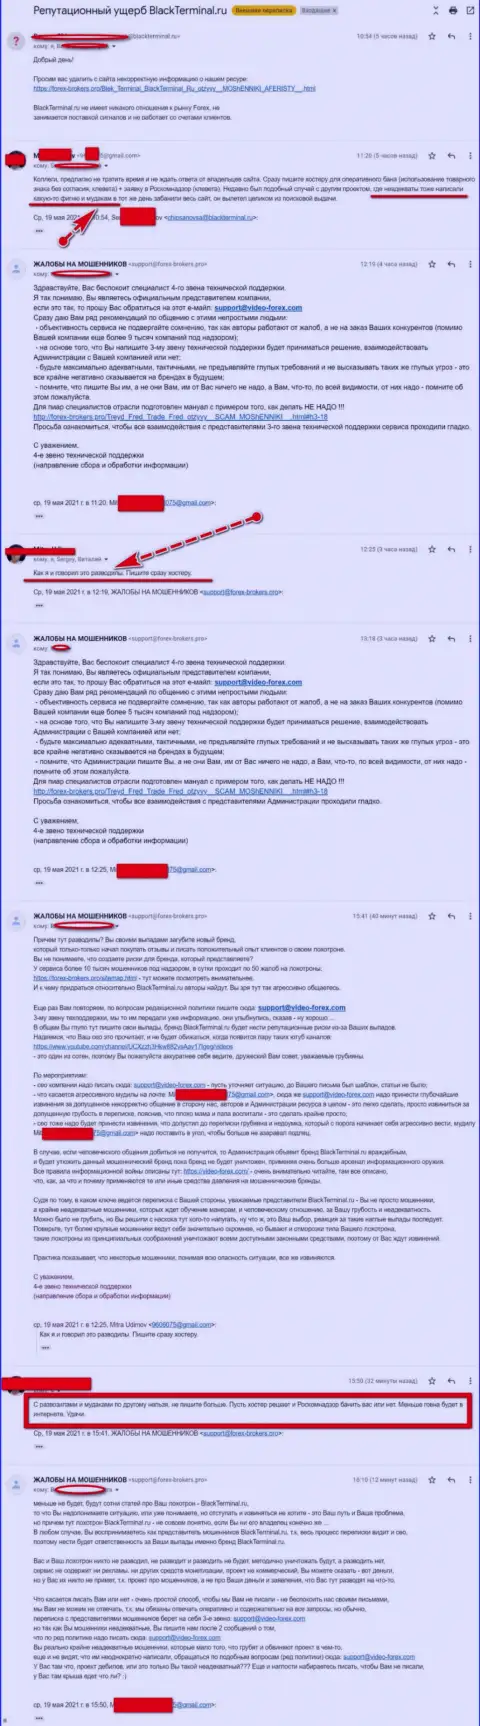 Переписка Администрации сайта, с отзывами о BlackTerminal Ru, с некими представителями этого незаконно действующего онлайн сервиса